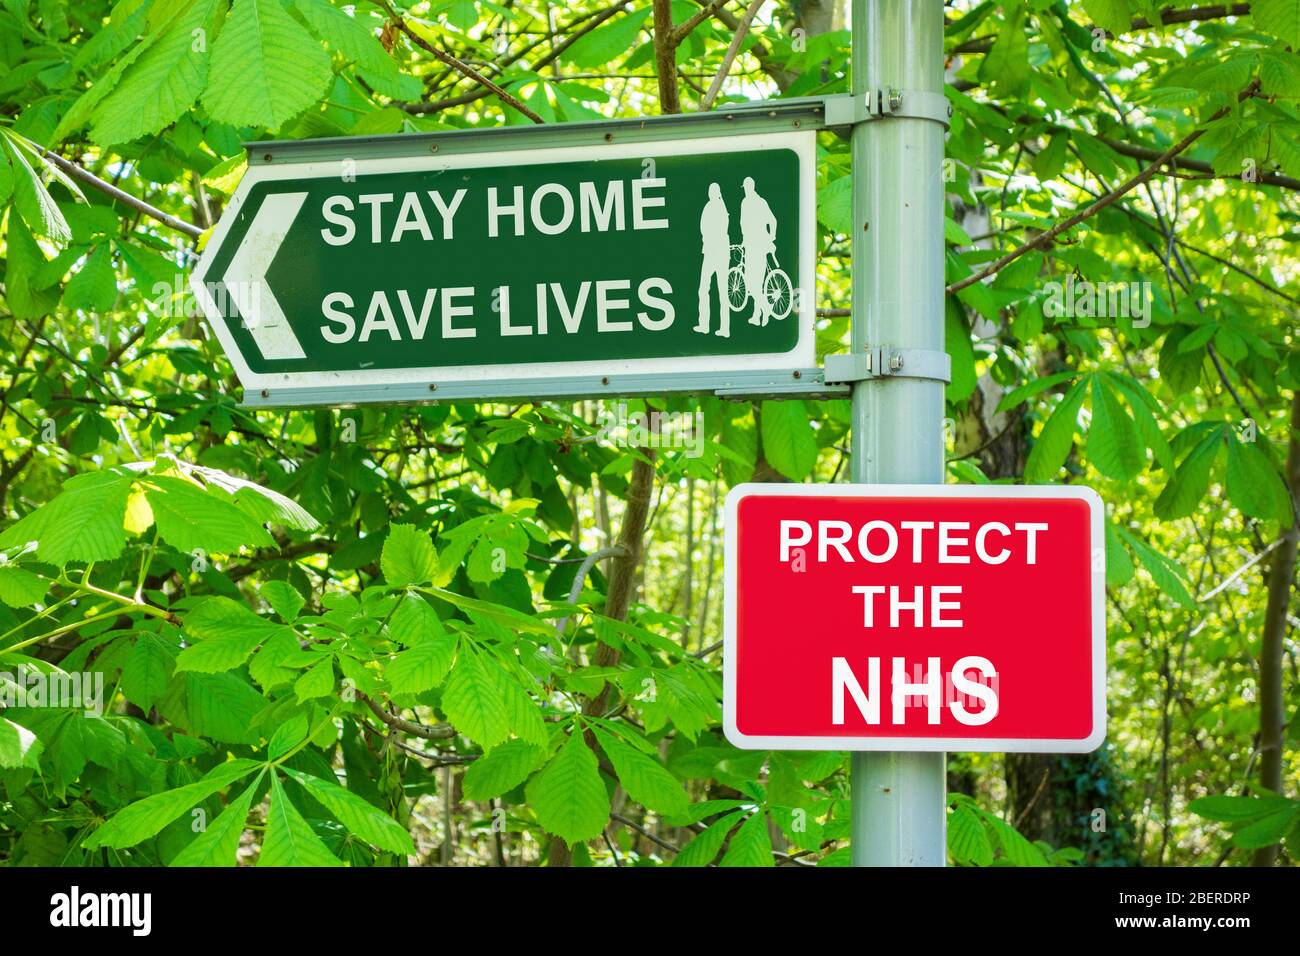 Rimani a casa salvare vite proteggere il NHS, Coronavirus, esercizio fisico, distanza sociale, auto isolamento ... concetto. Foto Stock